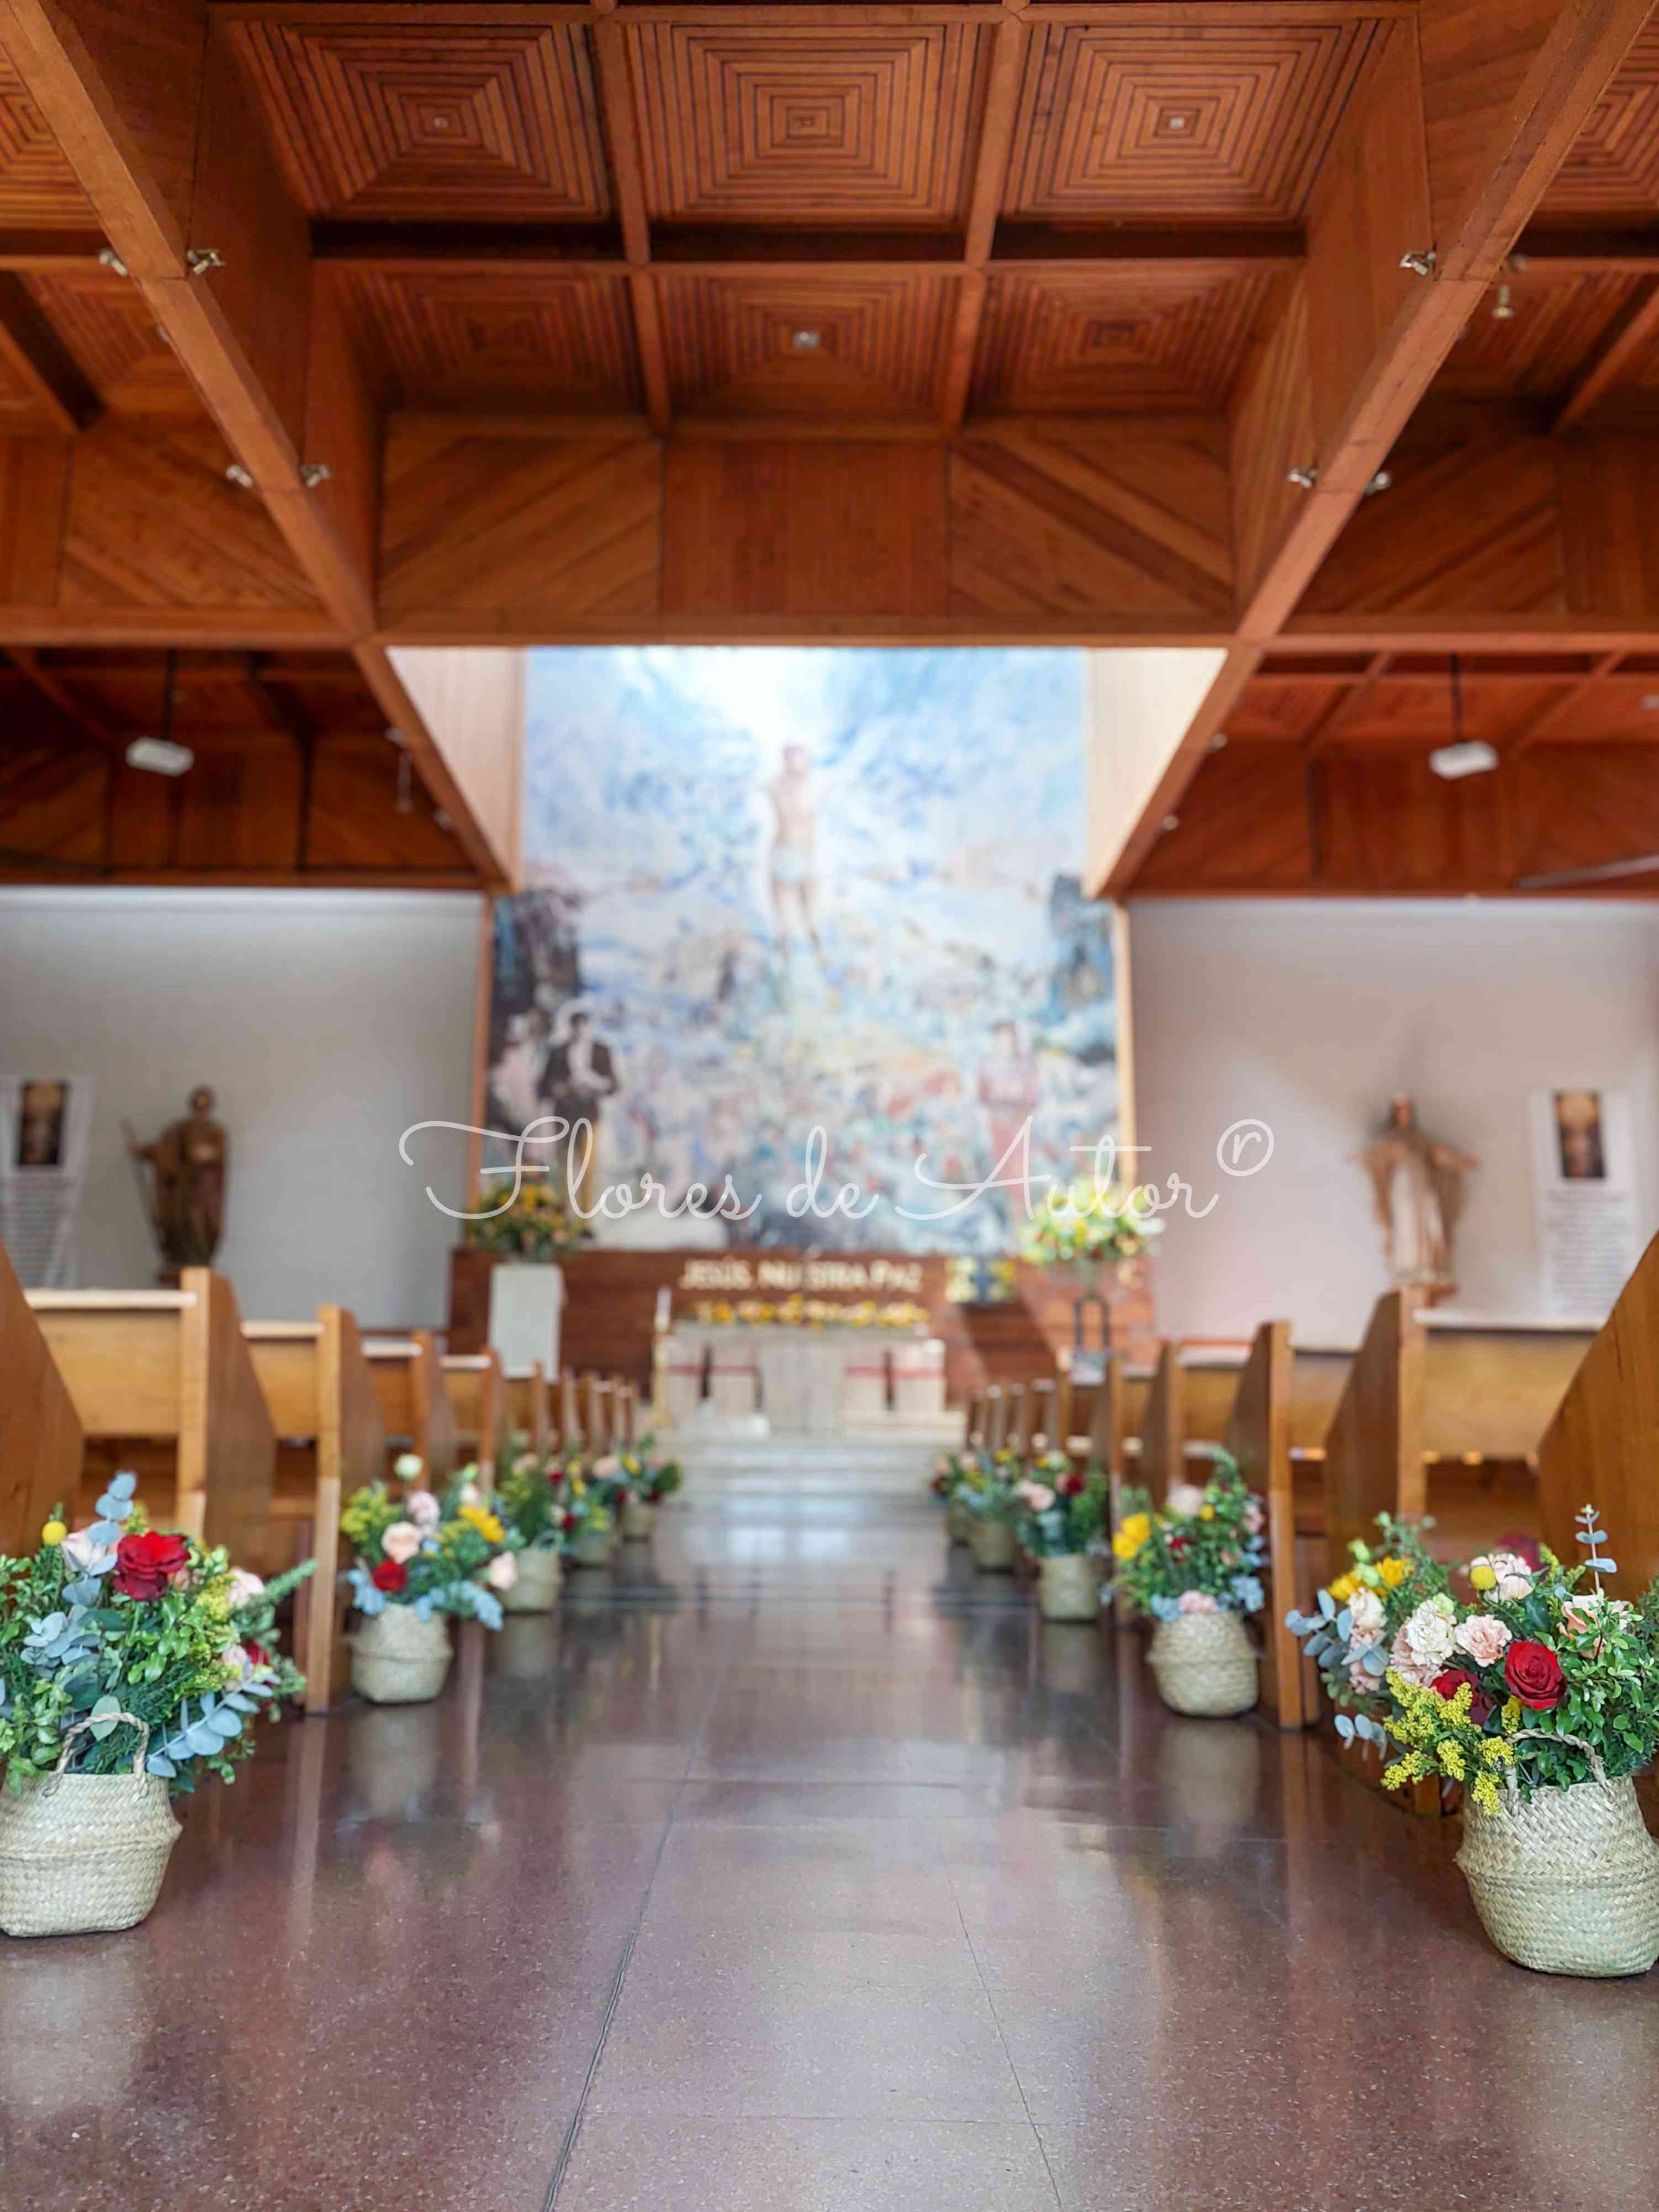 Canastos pasillo / Iglesia Los Castaños